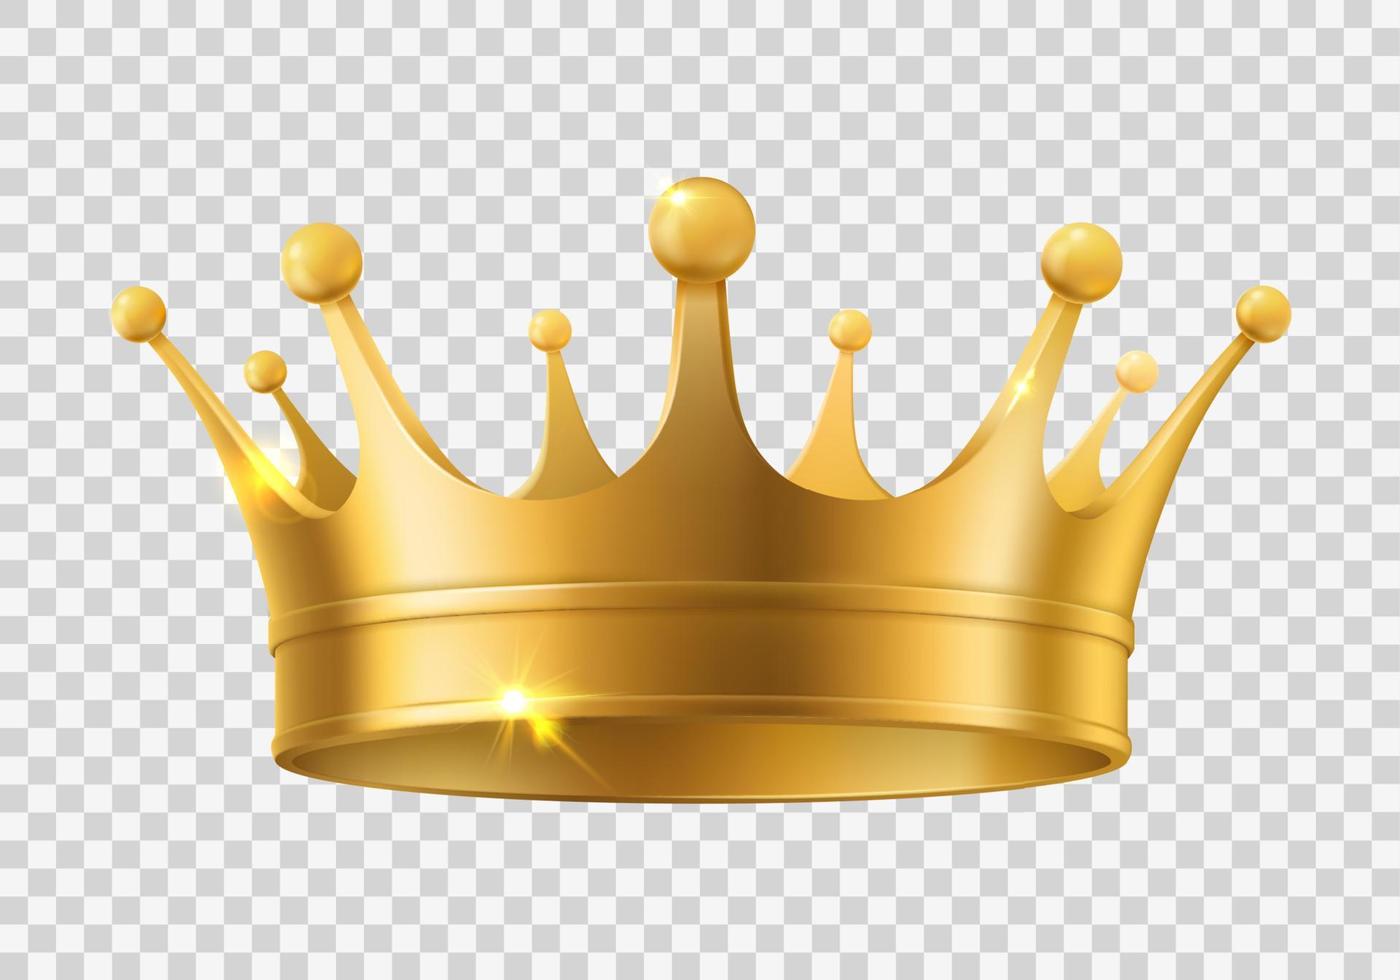 König oder Königin realistisch golden, glänzend Krone vektor